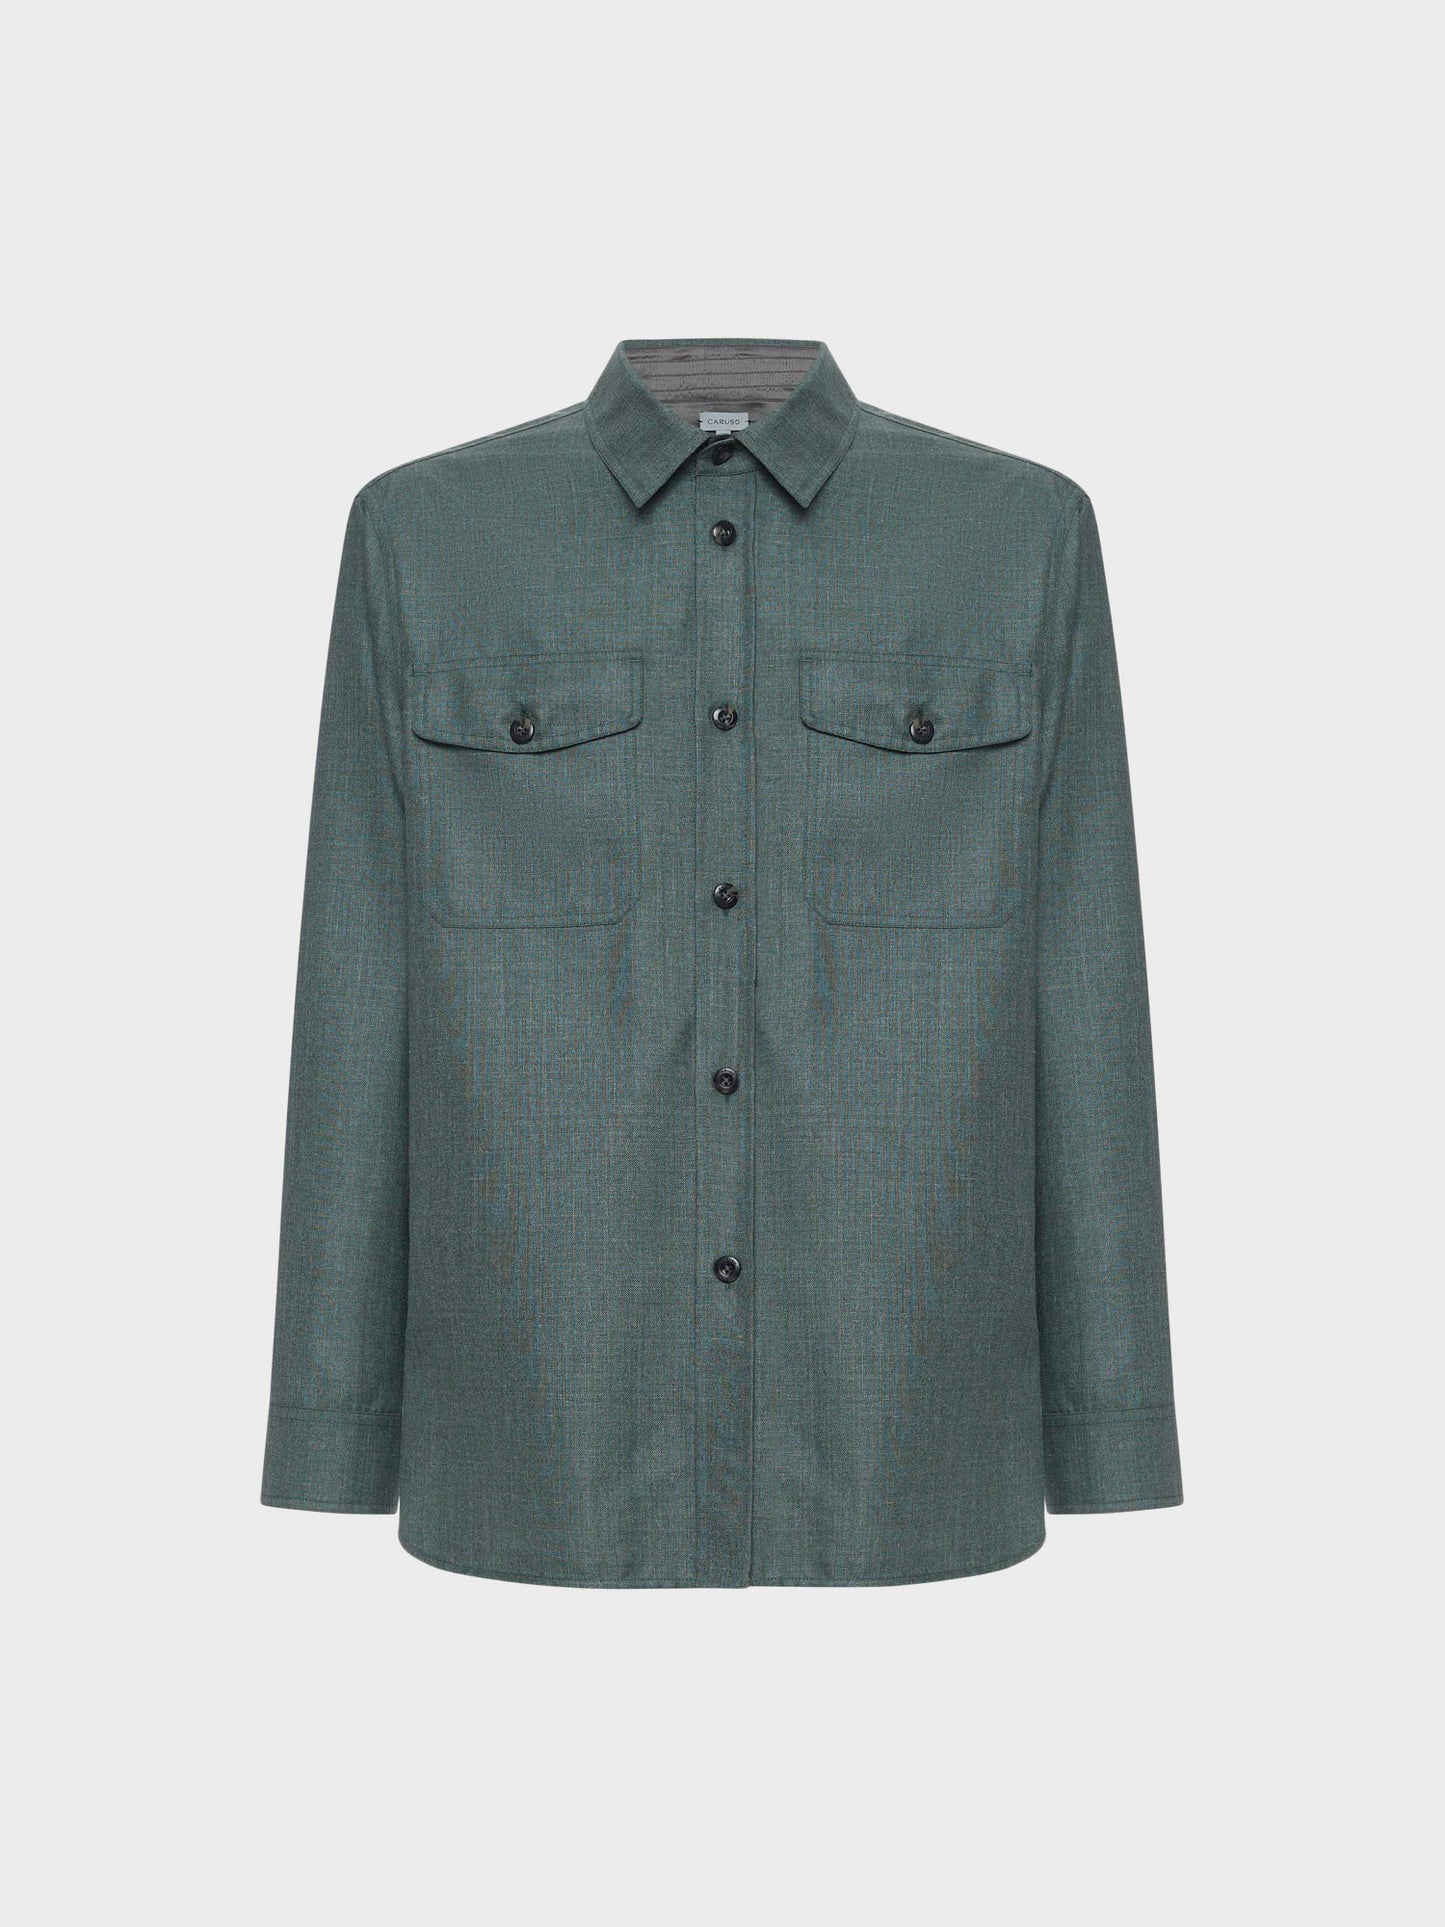 Caruso Menswear Abbigliamento Uomo Overshirt in lana, seta e lino verde still